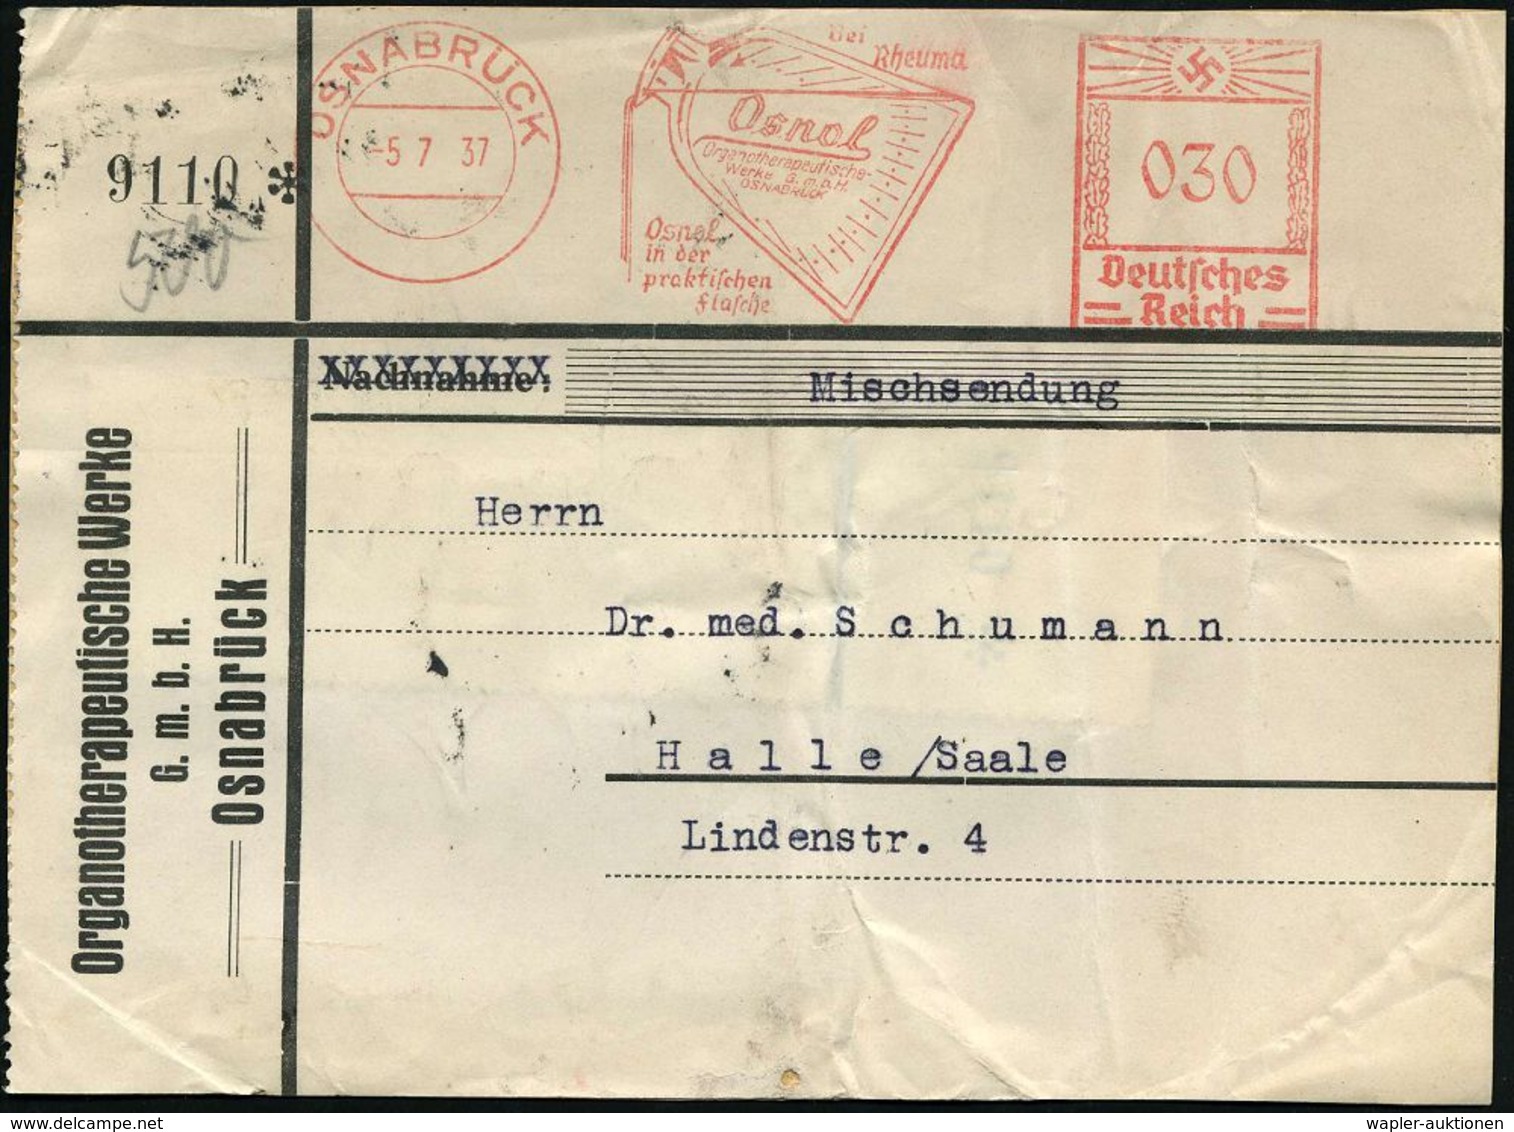 RHEUMATISMUS : OSNABRÜCK/ Bei/ Rheuma/ Osnol/ Organotherapeutische Werke.. 1937 (5.7.) AFS 030 Pf. (Arzneiflasche) Klar  - Malattie